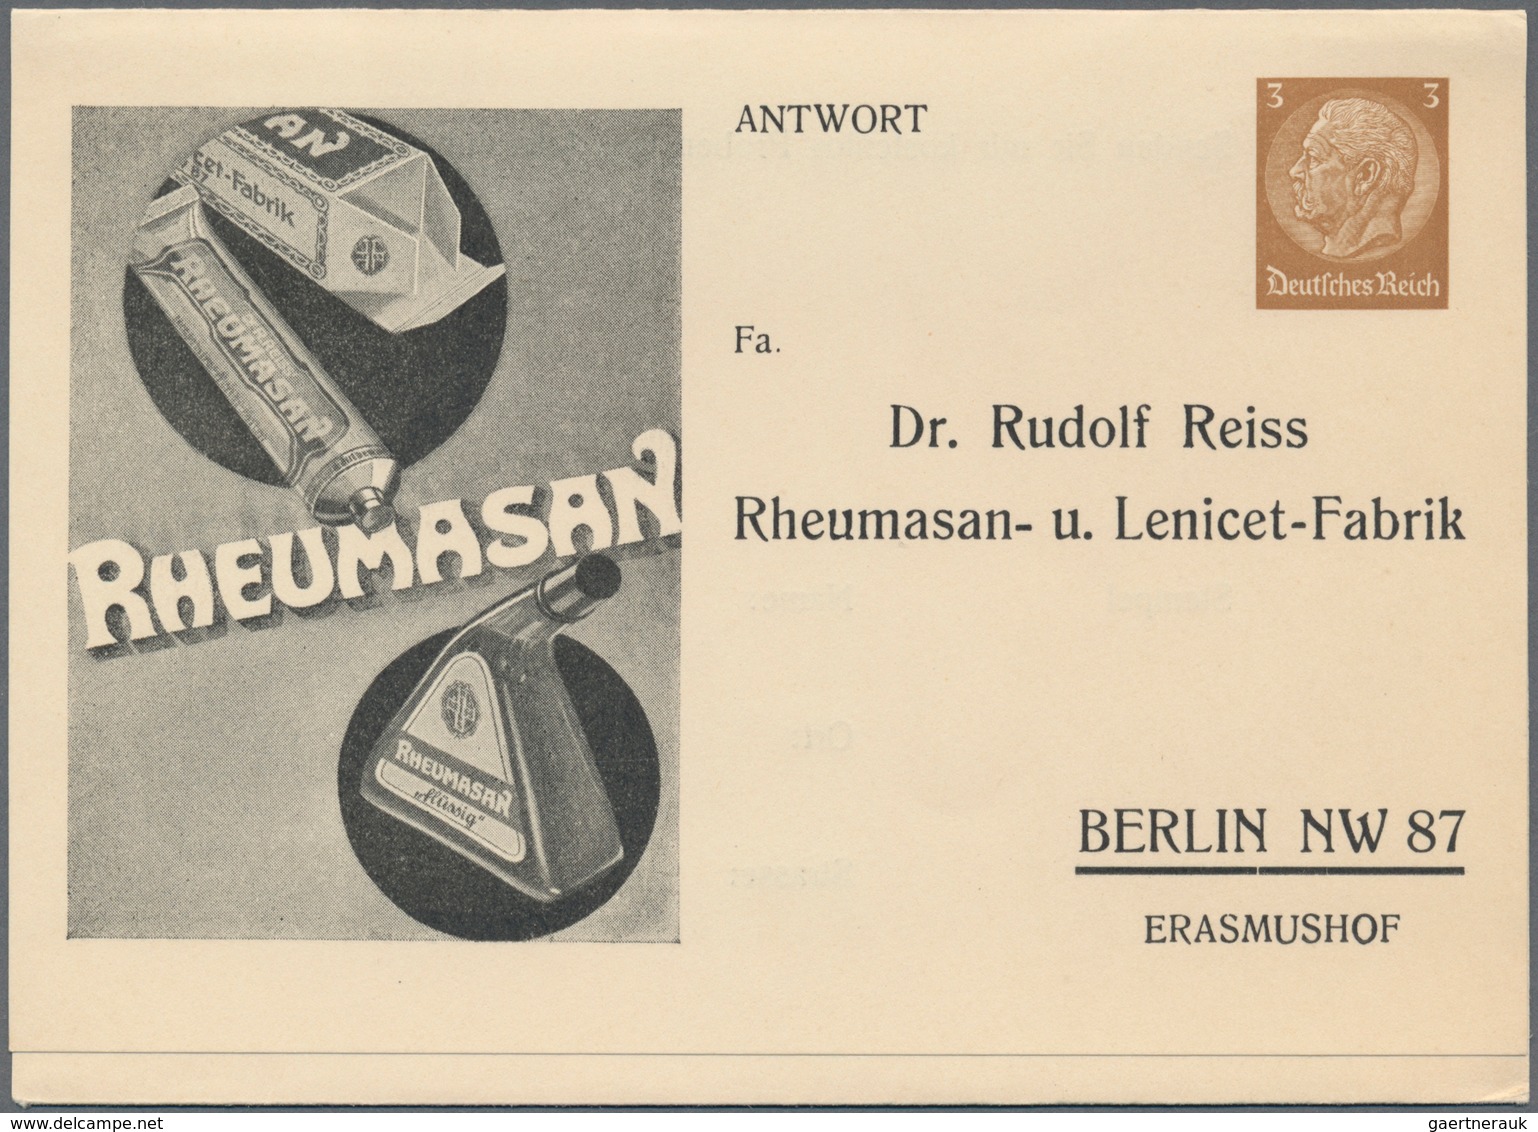 Deutsches Reich - Privatganzsachen: 1900/1944, ca. 110 Privatganzsachen-Karten bzw. Umschläge/Streif